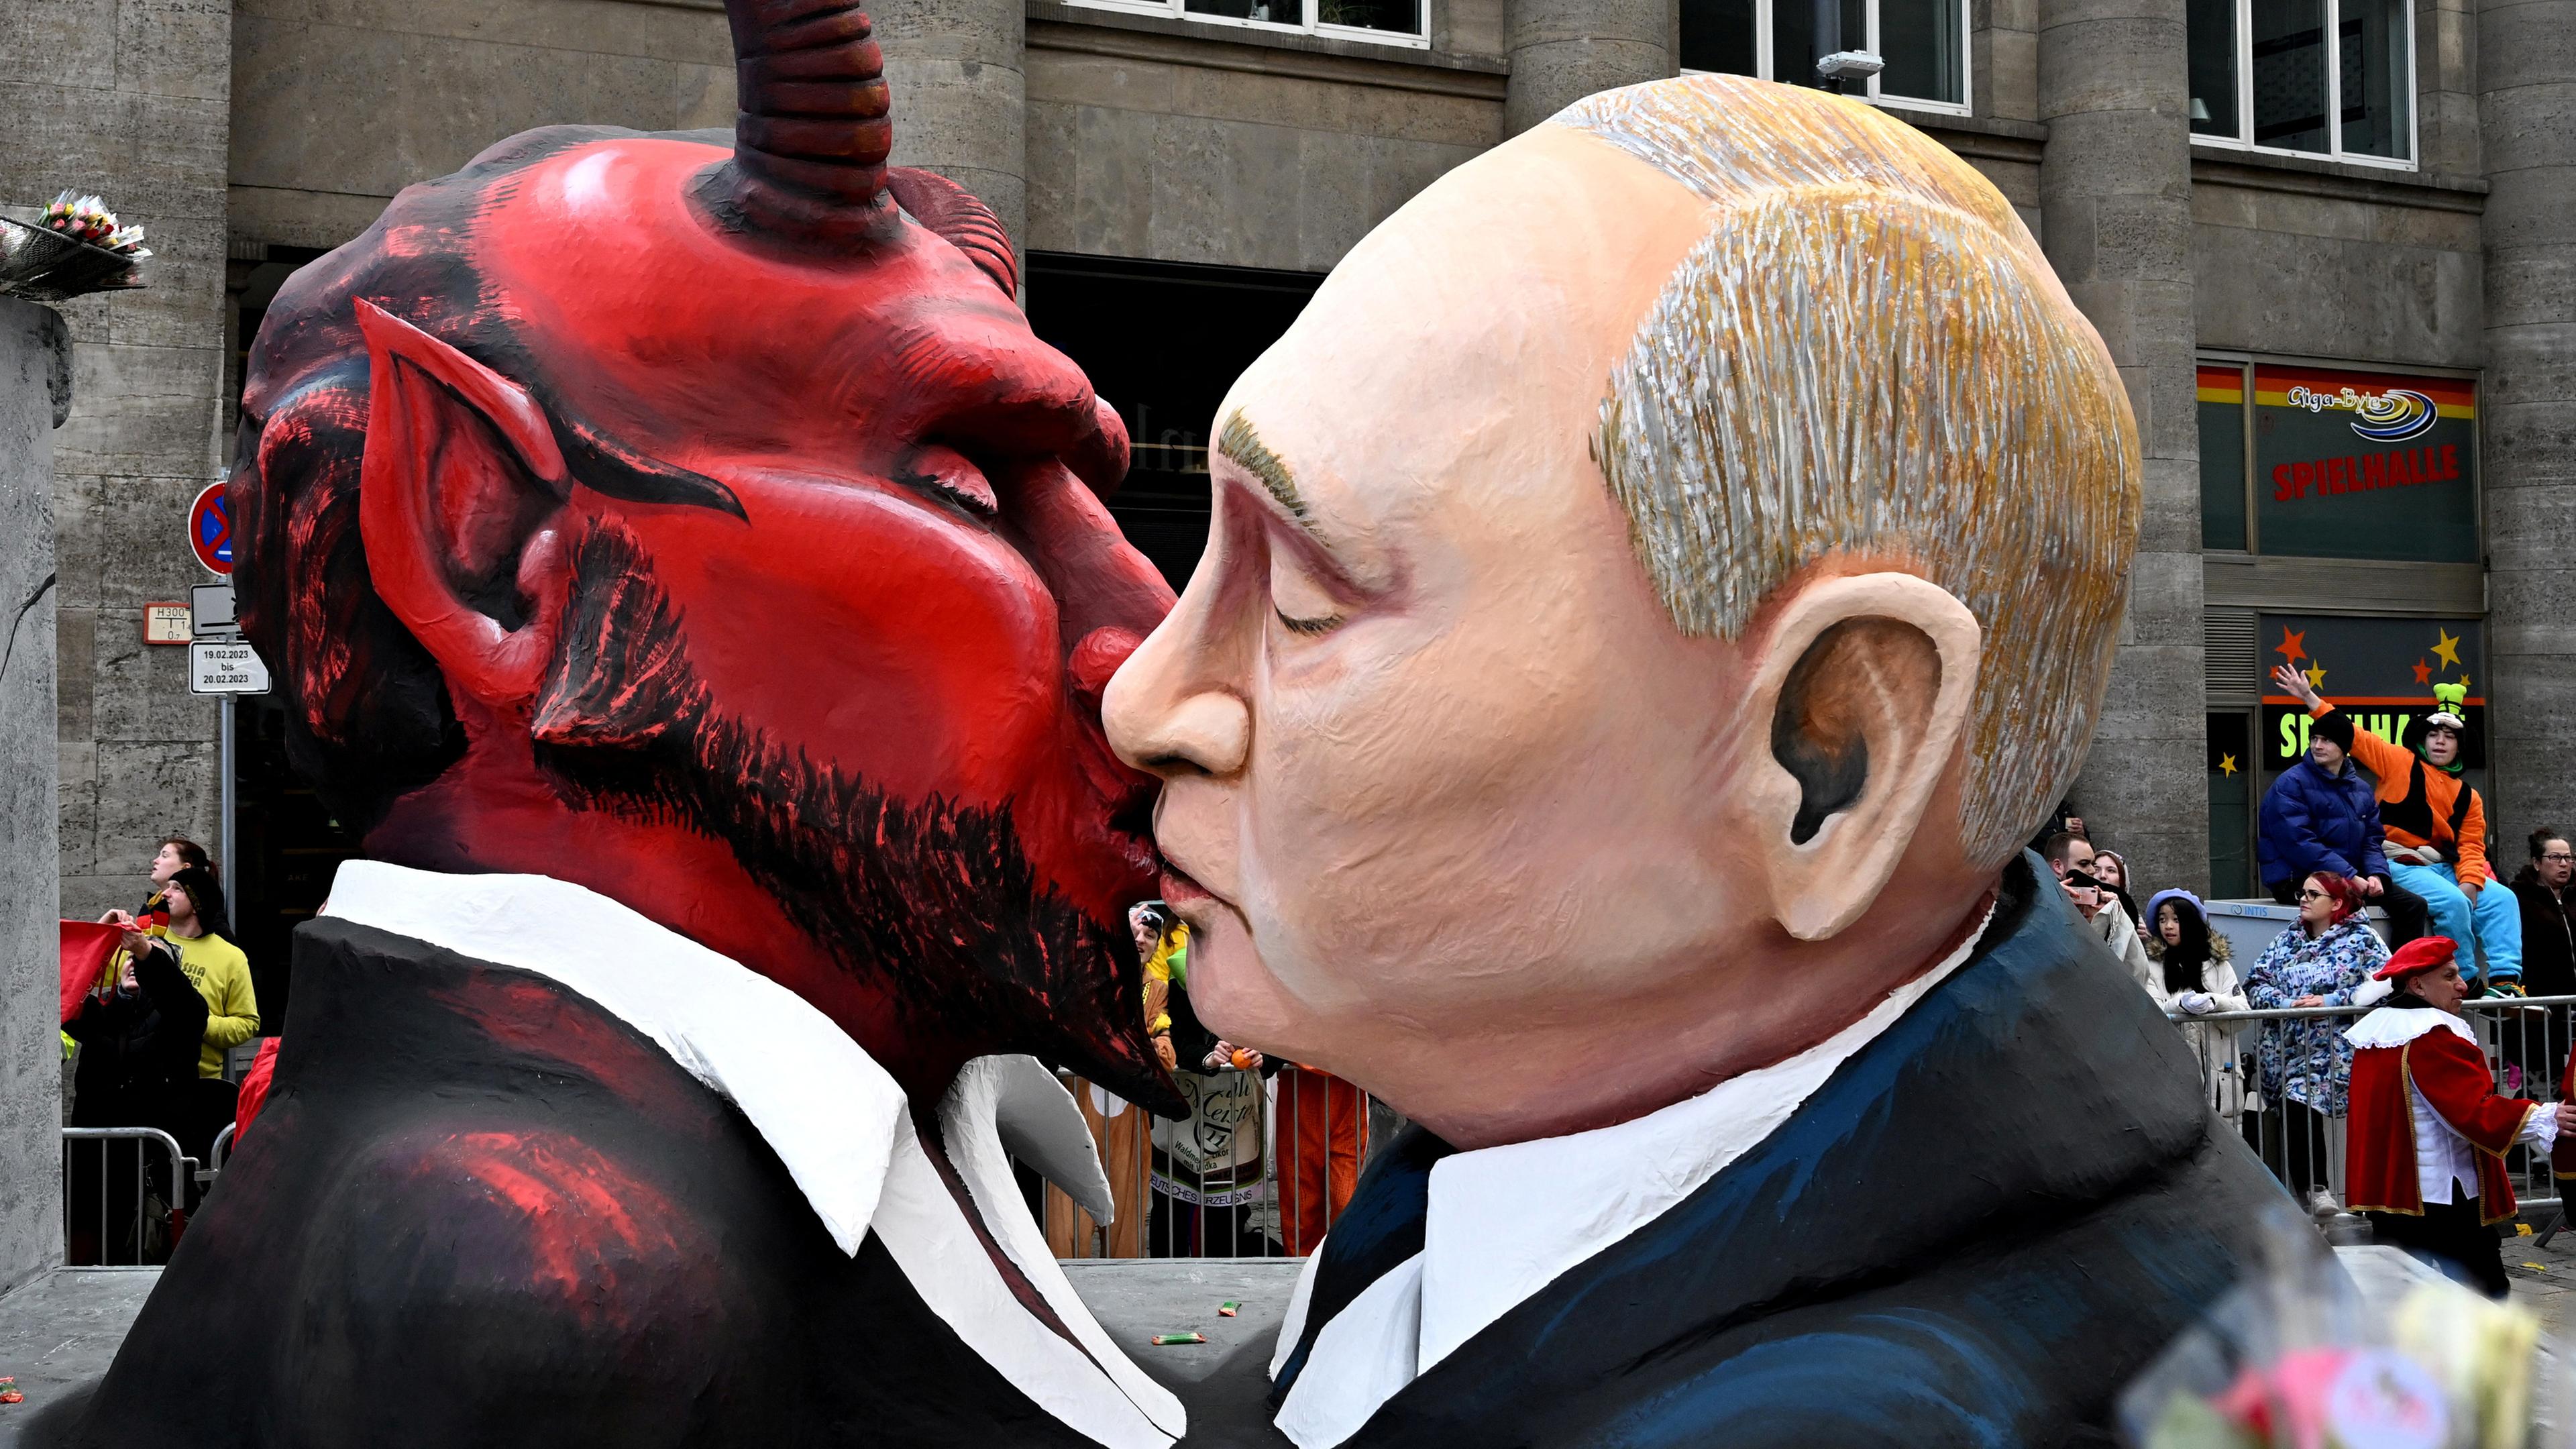 Rosenmontagszug in Köln, Putin-Satan Themenwagen